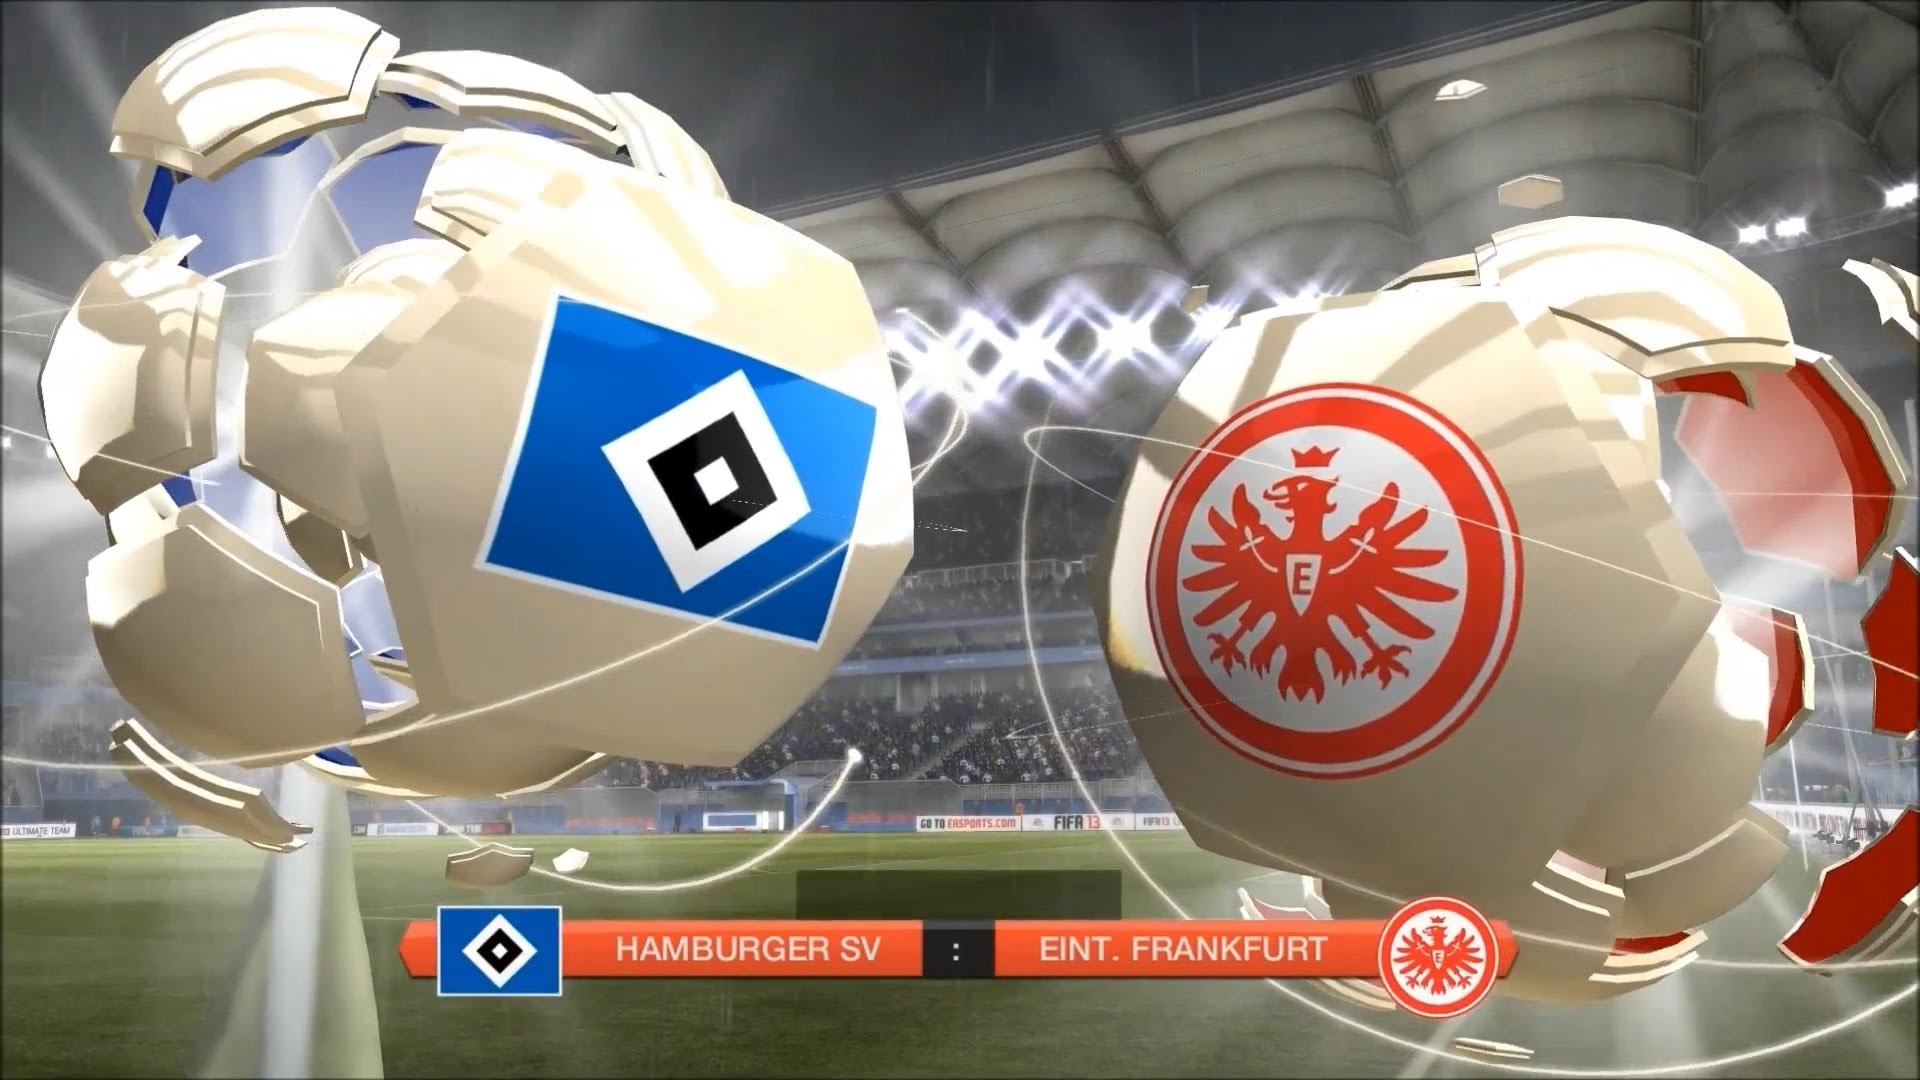 Hamburger Sv Vs Eintracht Frankfurt - Eintracht Frankfurt Vs Hamburger Sv , HD Wallpaper & Backgrounds